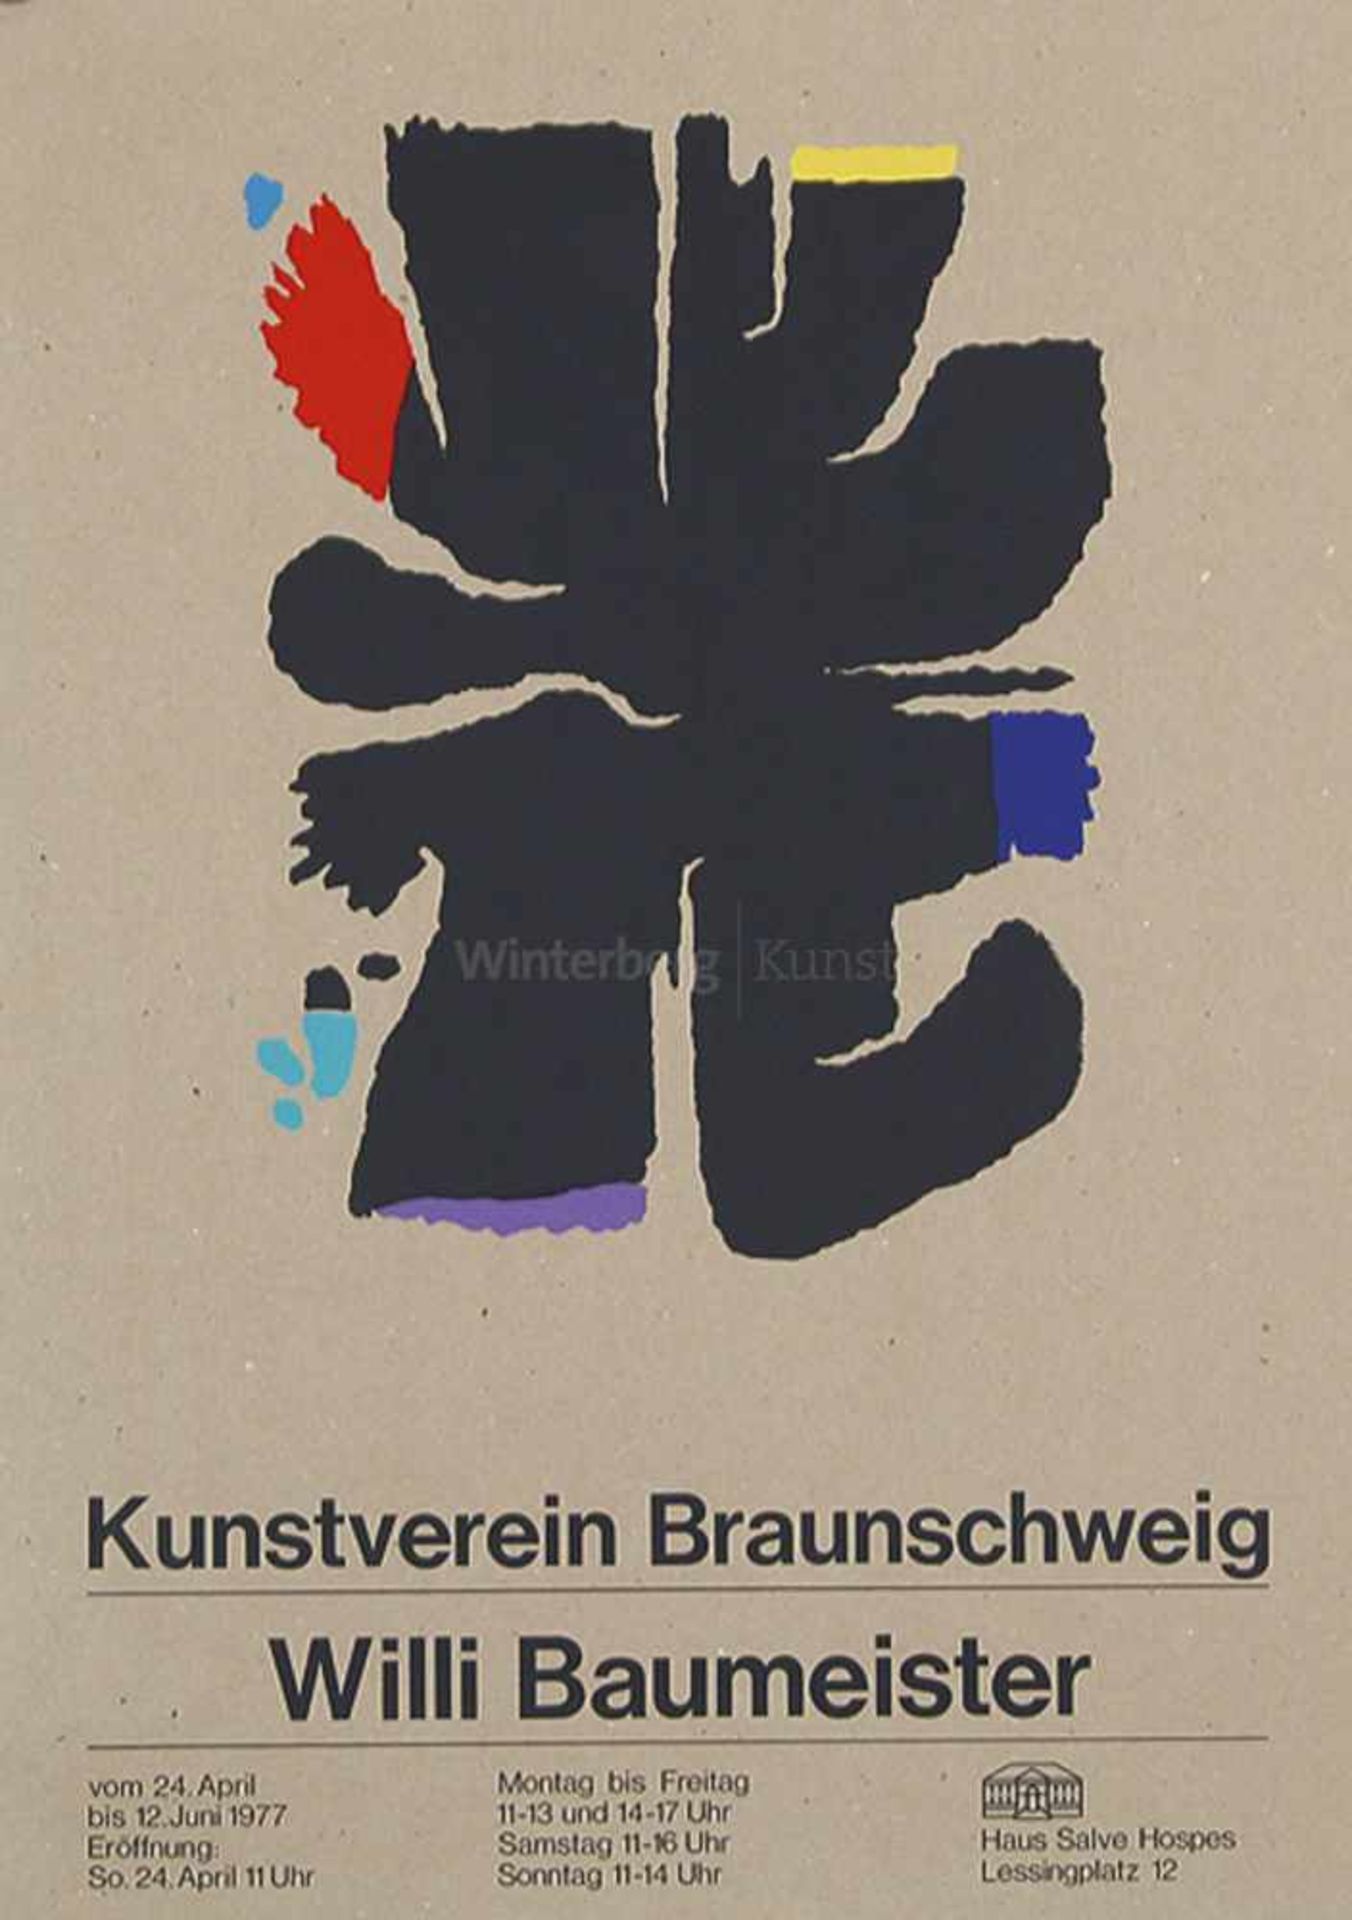 WILLI BAUMEISTER 1889 - Stuttgart - 1955